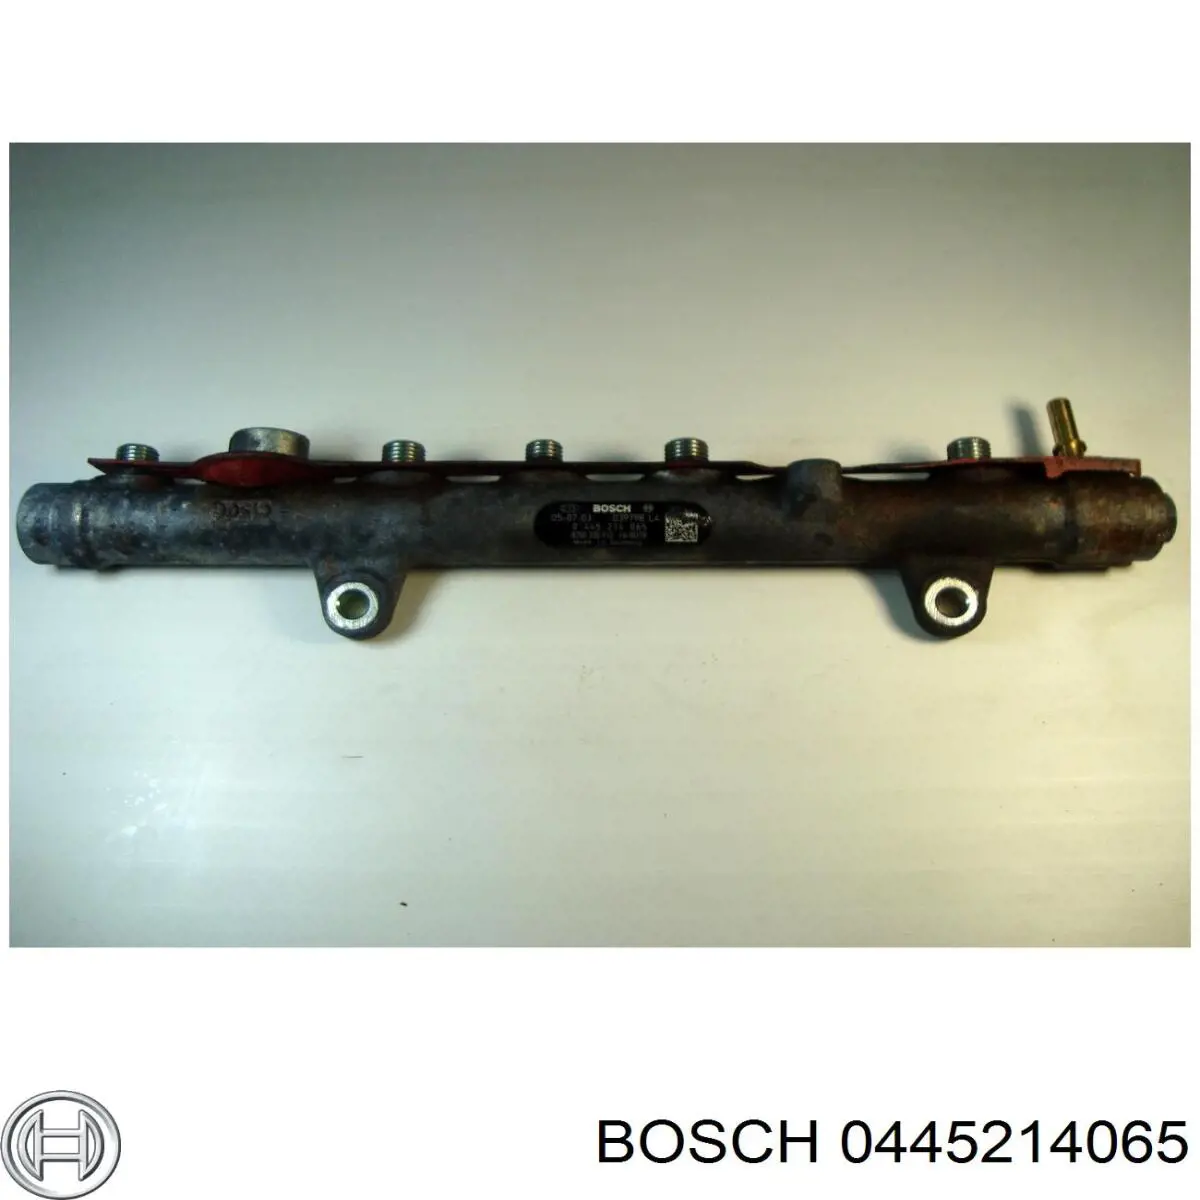 0445214065 Bosch rampa de inyectores